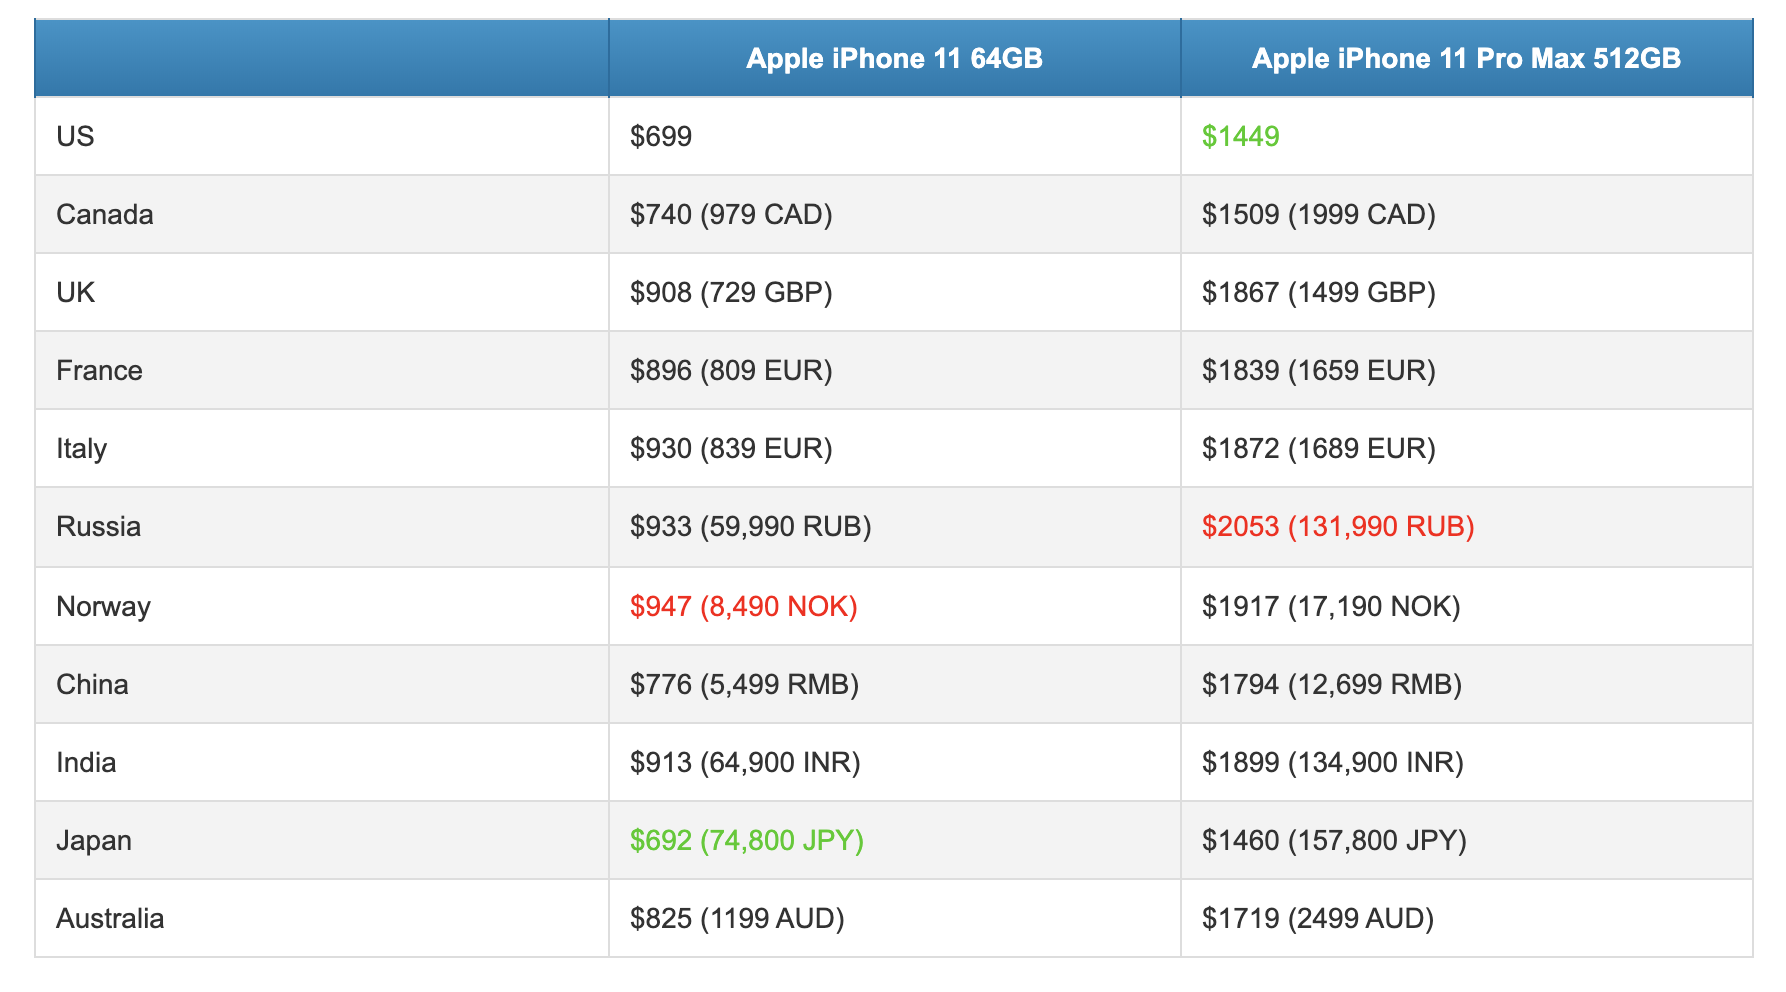 Price iPhones